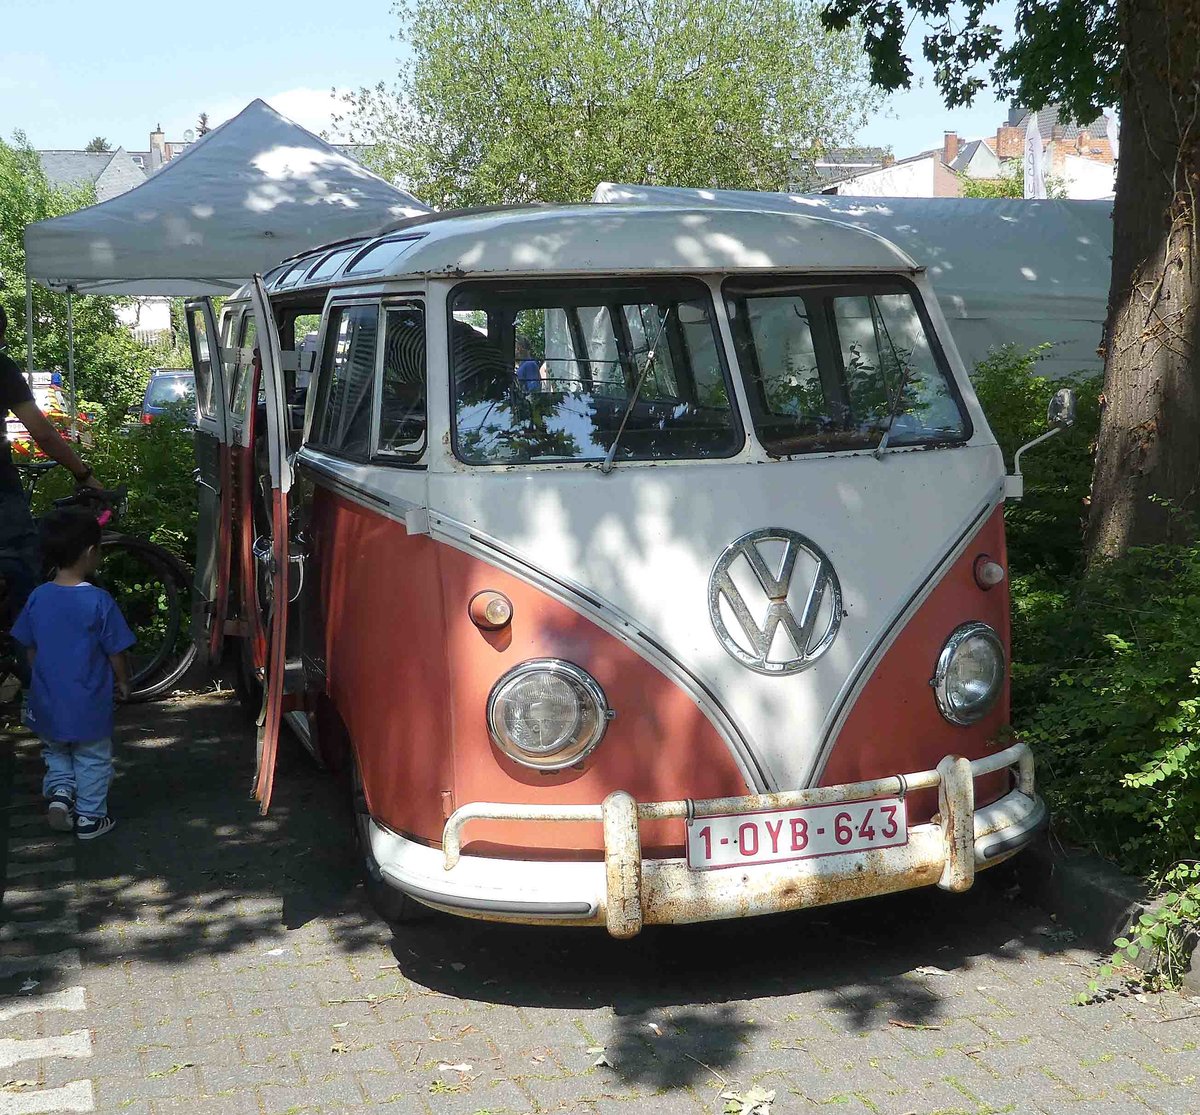 =VW T1 Samba steht auf dem Ausstellungsgelände in Bad Camberg anl. LOTTERMANN-Bullitreffen im Juni 2019